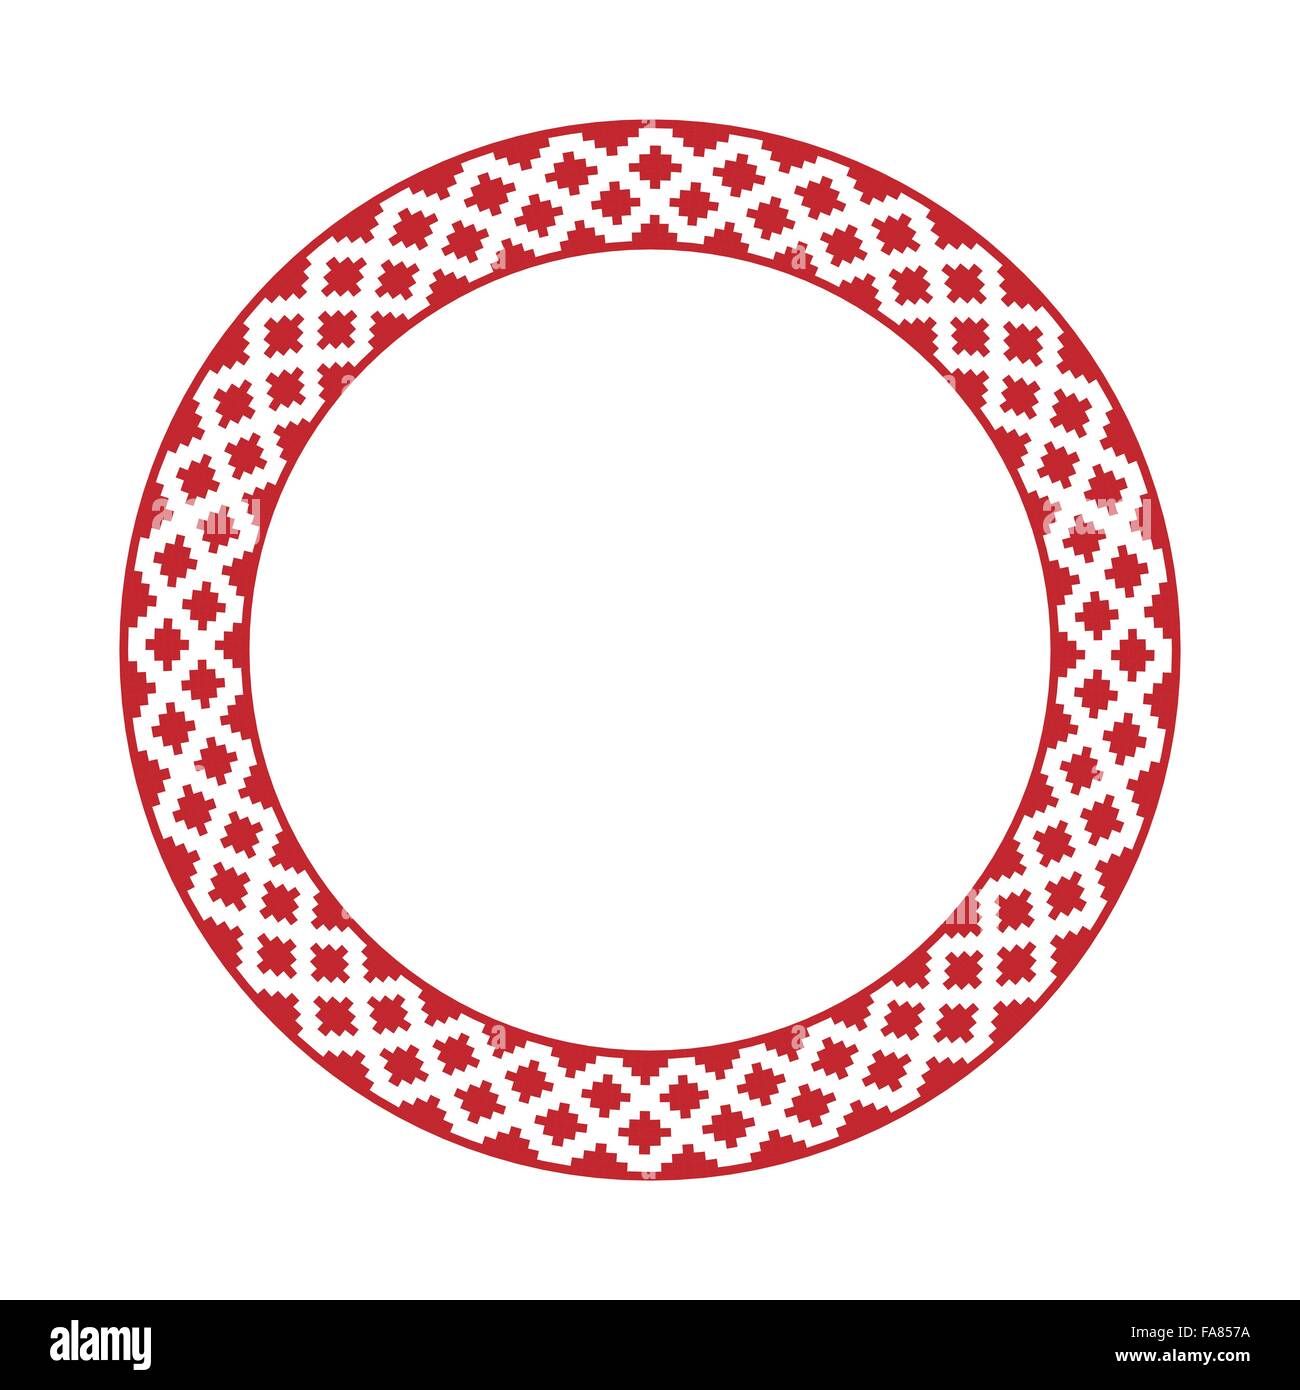 Vektor-Illustration der traditionellen slawischen Runde gestickte Muster Stock Vektor